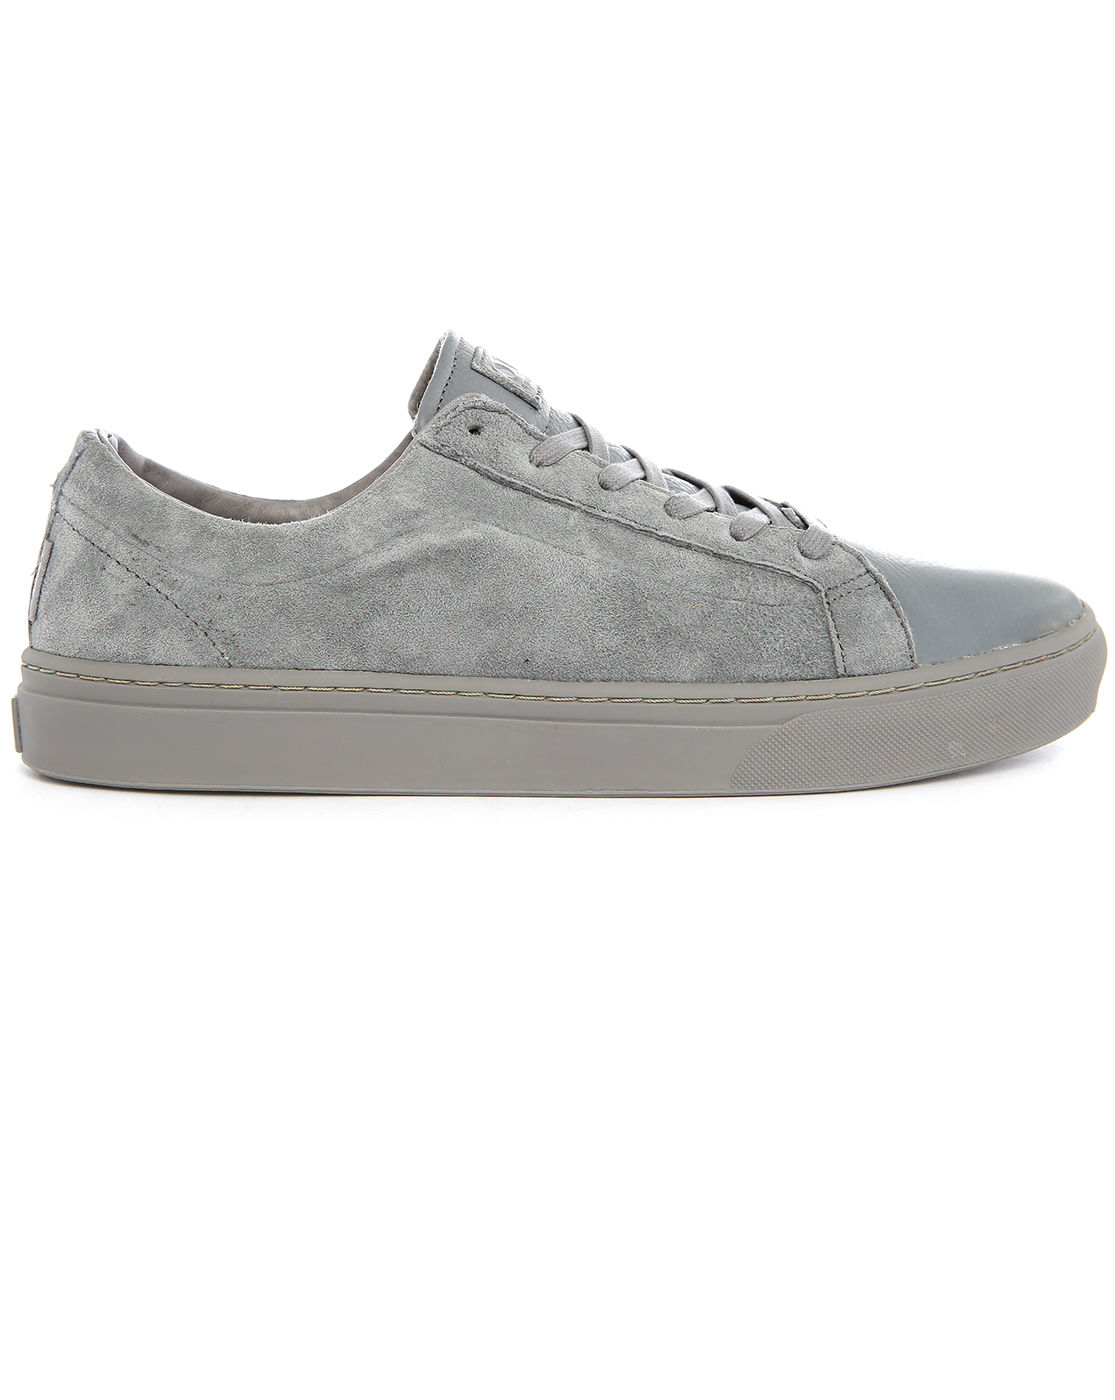 Vans Whitlock Otw Mono Grey Suede Sneakers in Gray for Men (grey) | Lyst